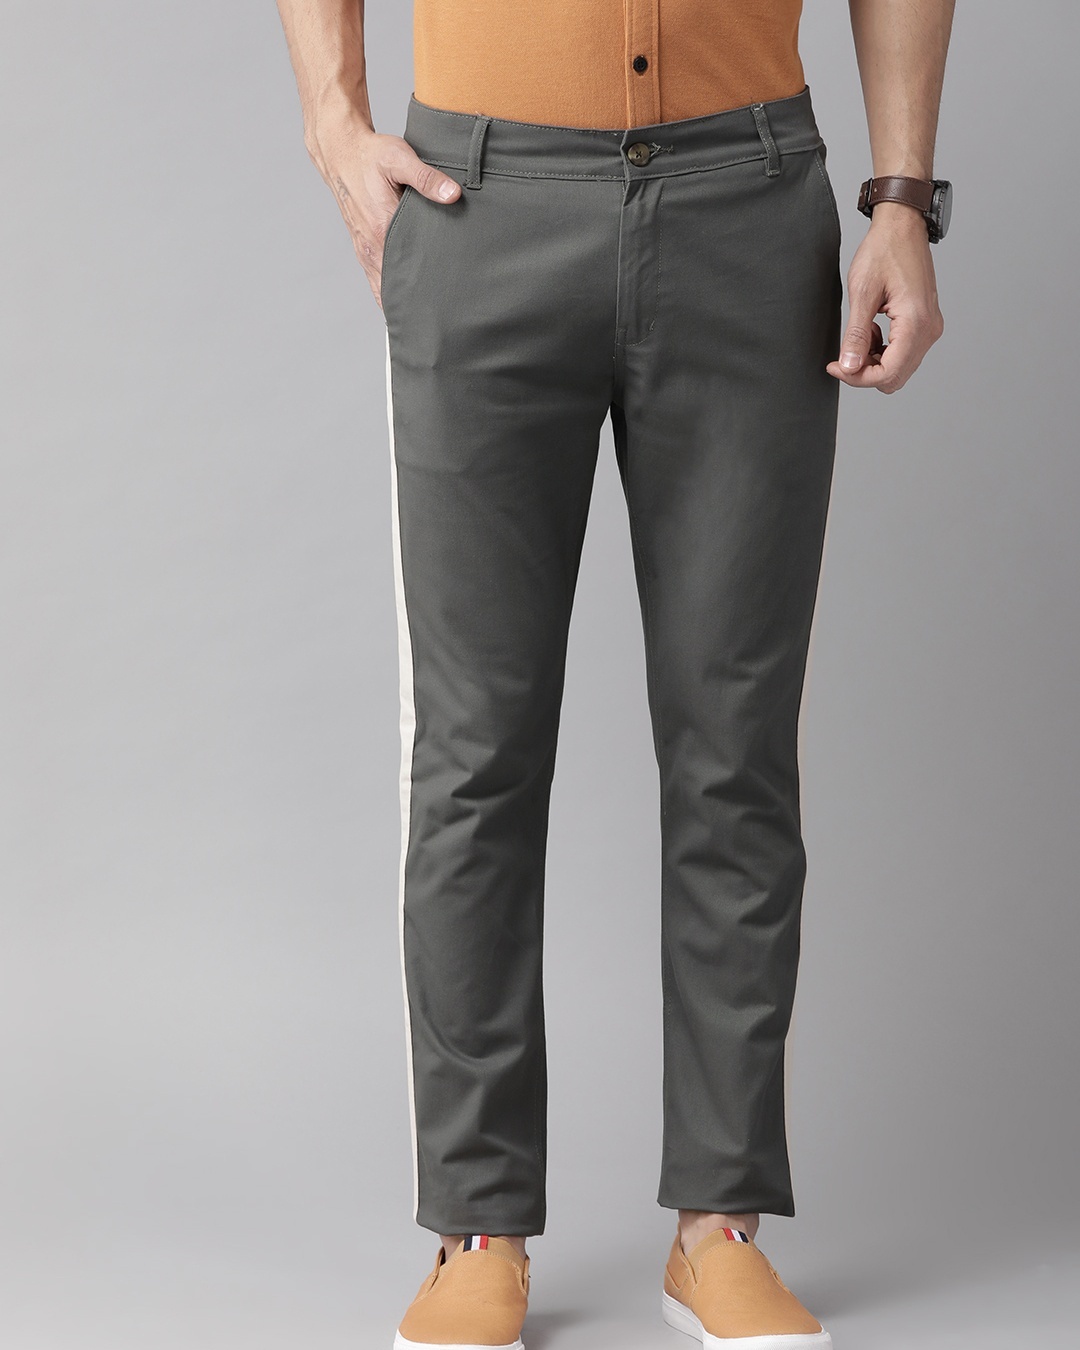 Buy Men's Grey Color Block Slim Fit Chinos for Men Grey Online at Bewakoof